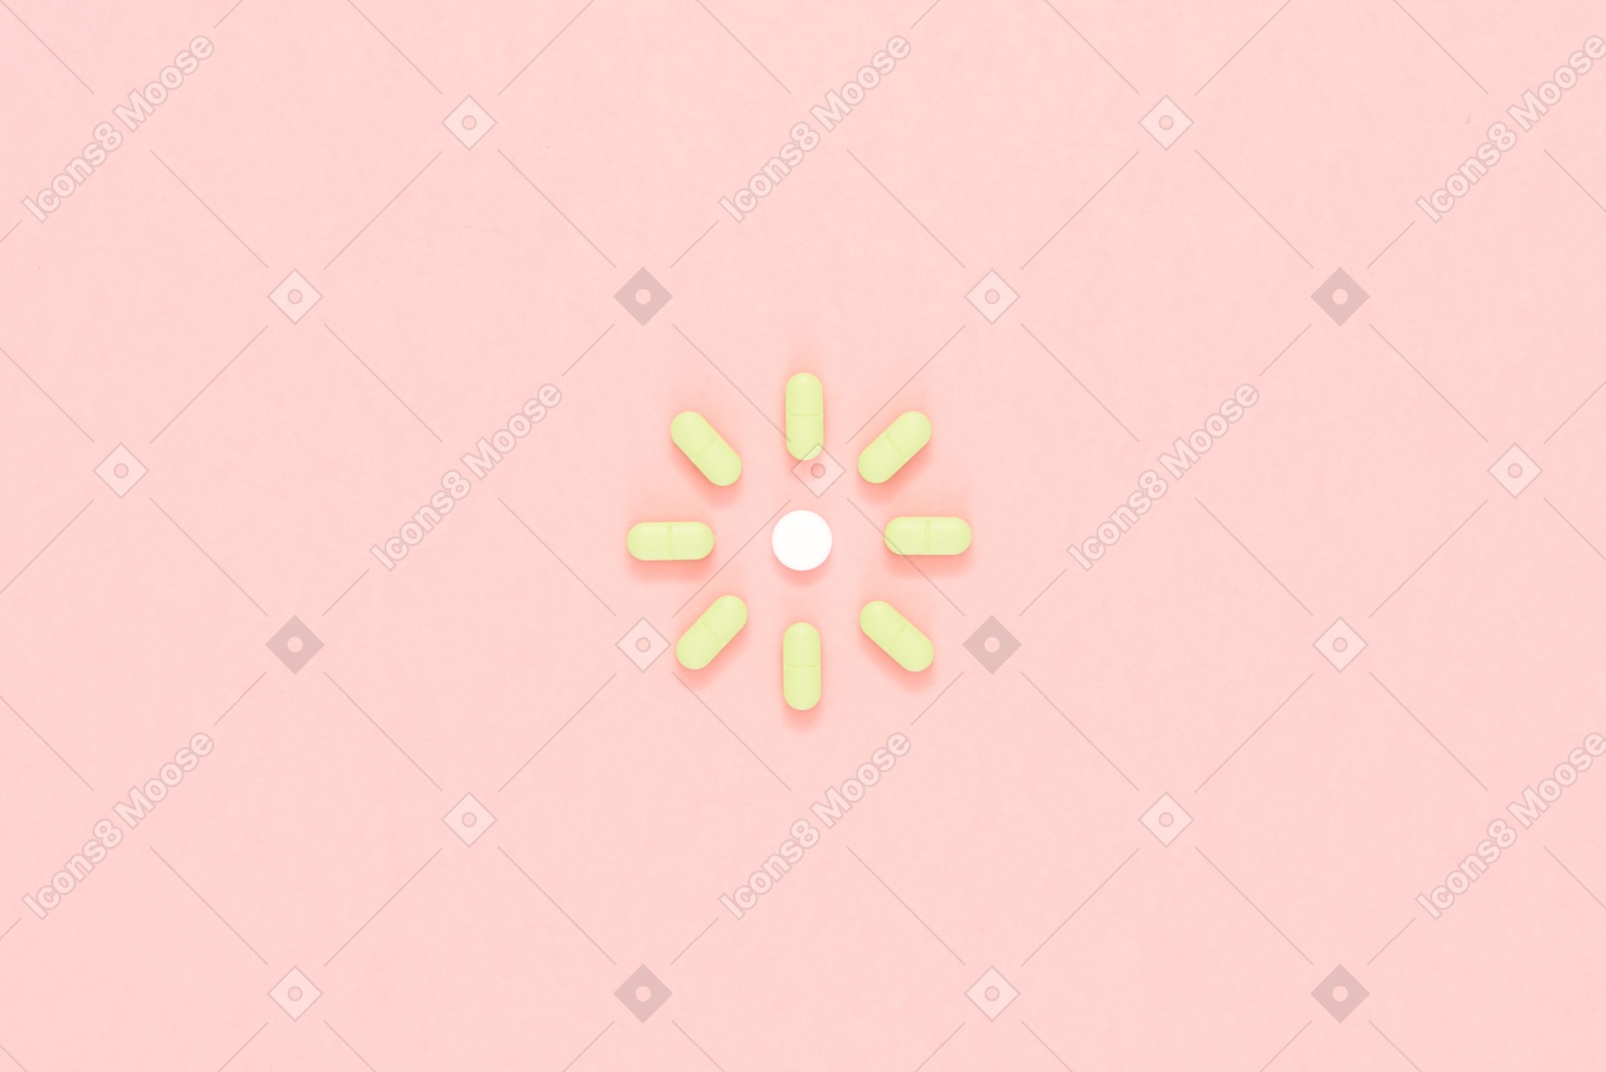 Green pills arranged in a shape of sun